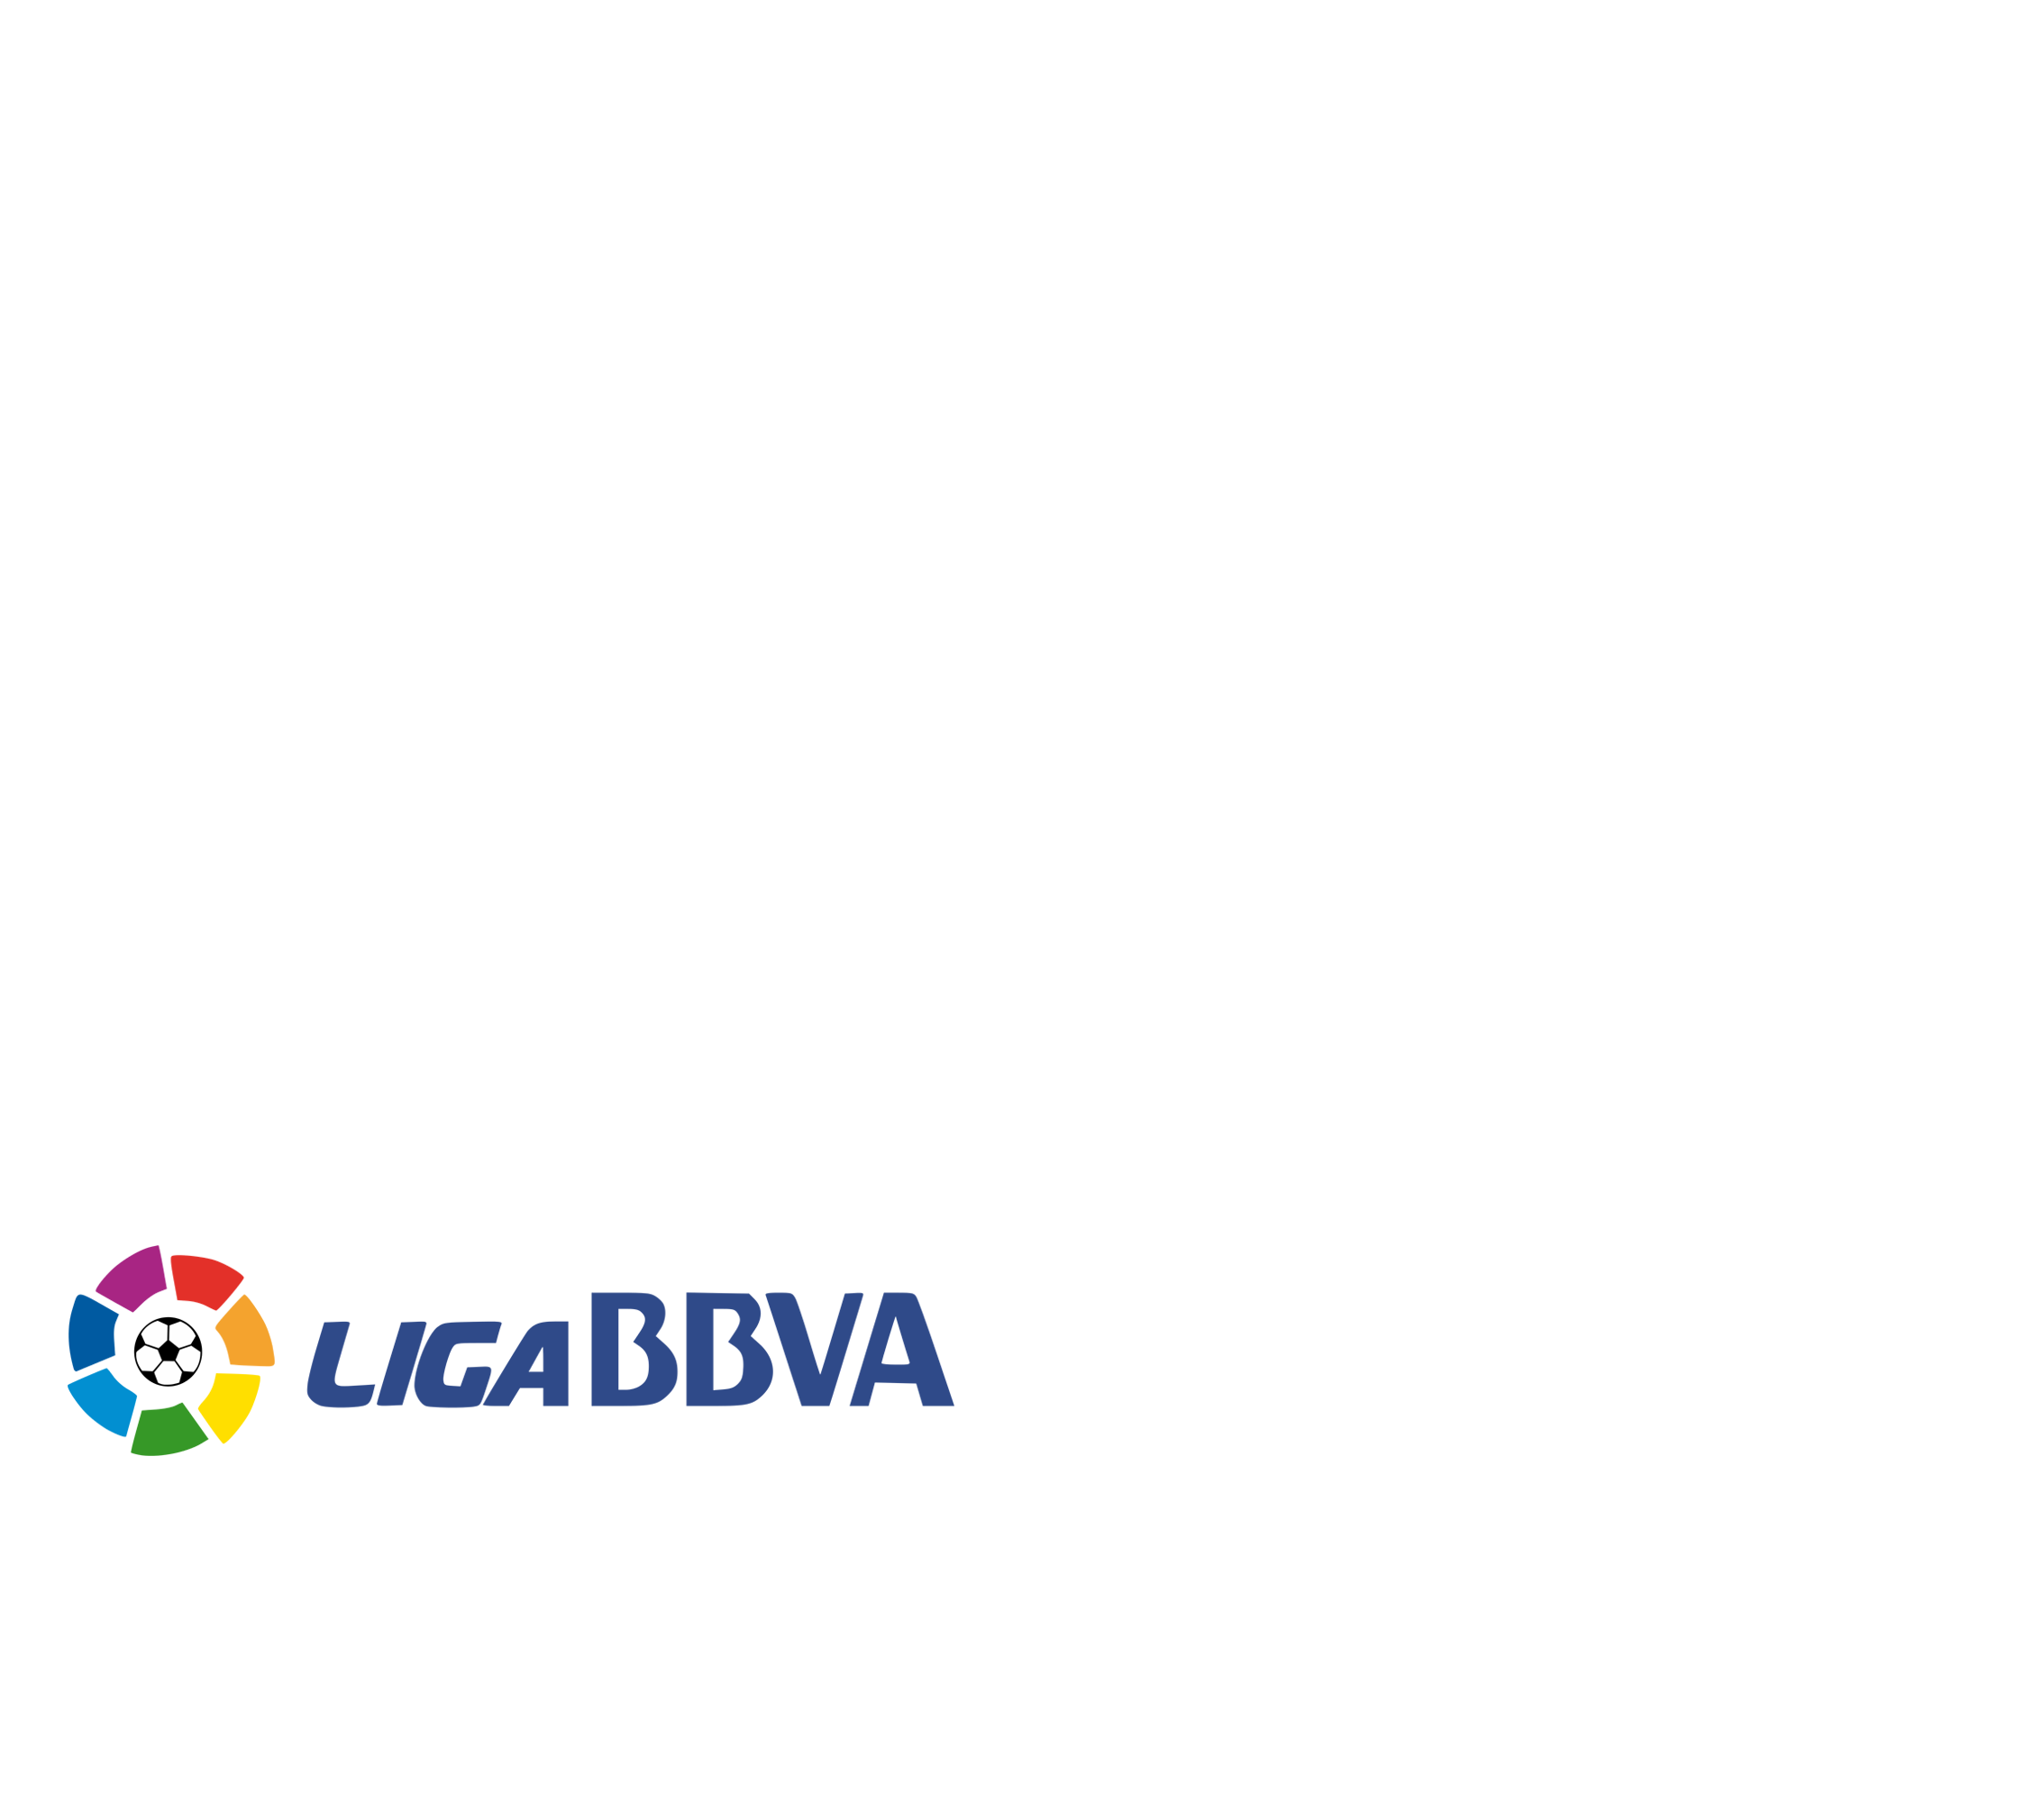 Clasificación de la Liga BBVA 2015/16